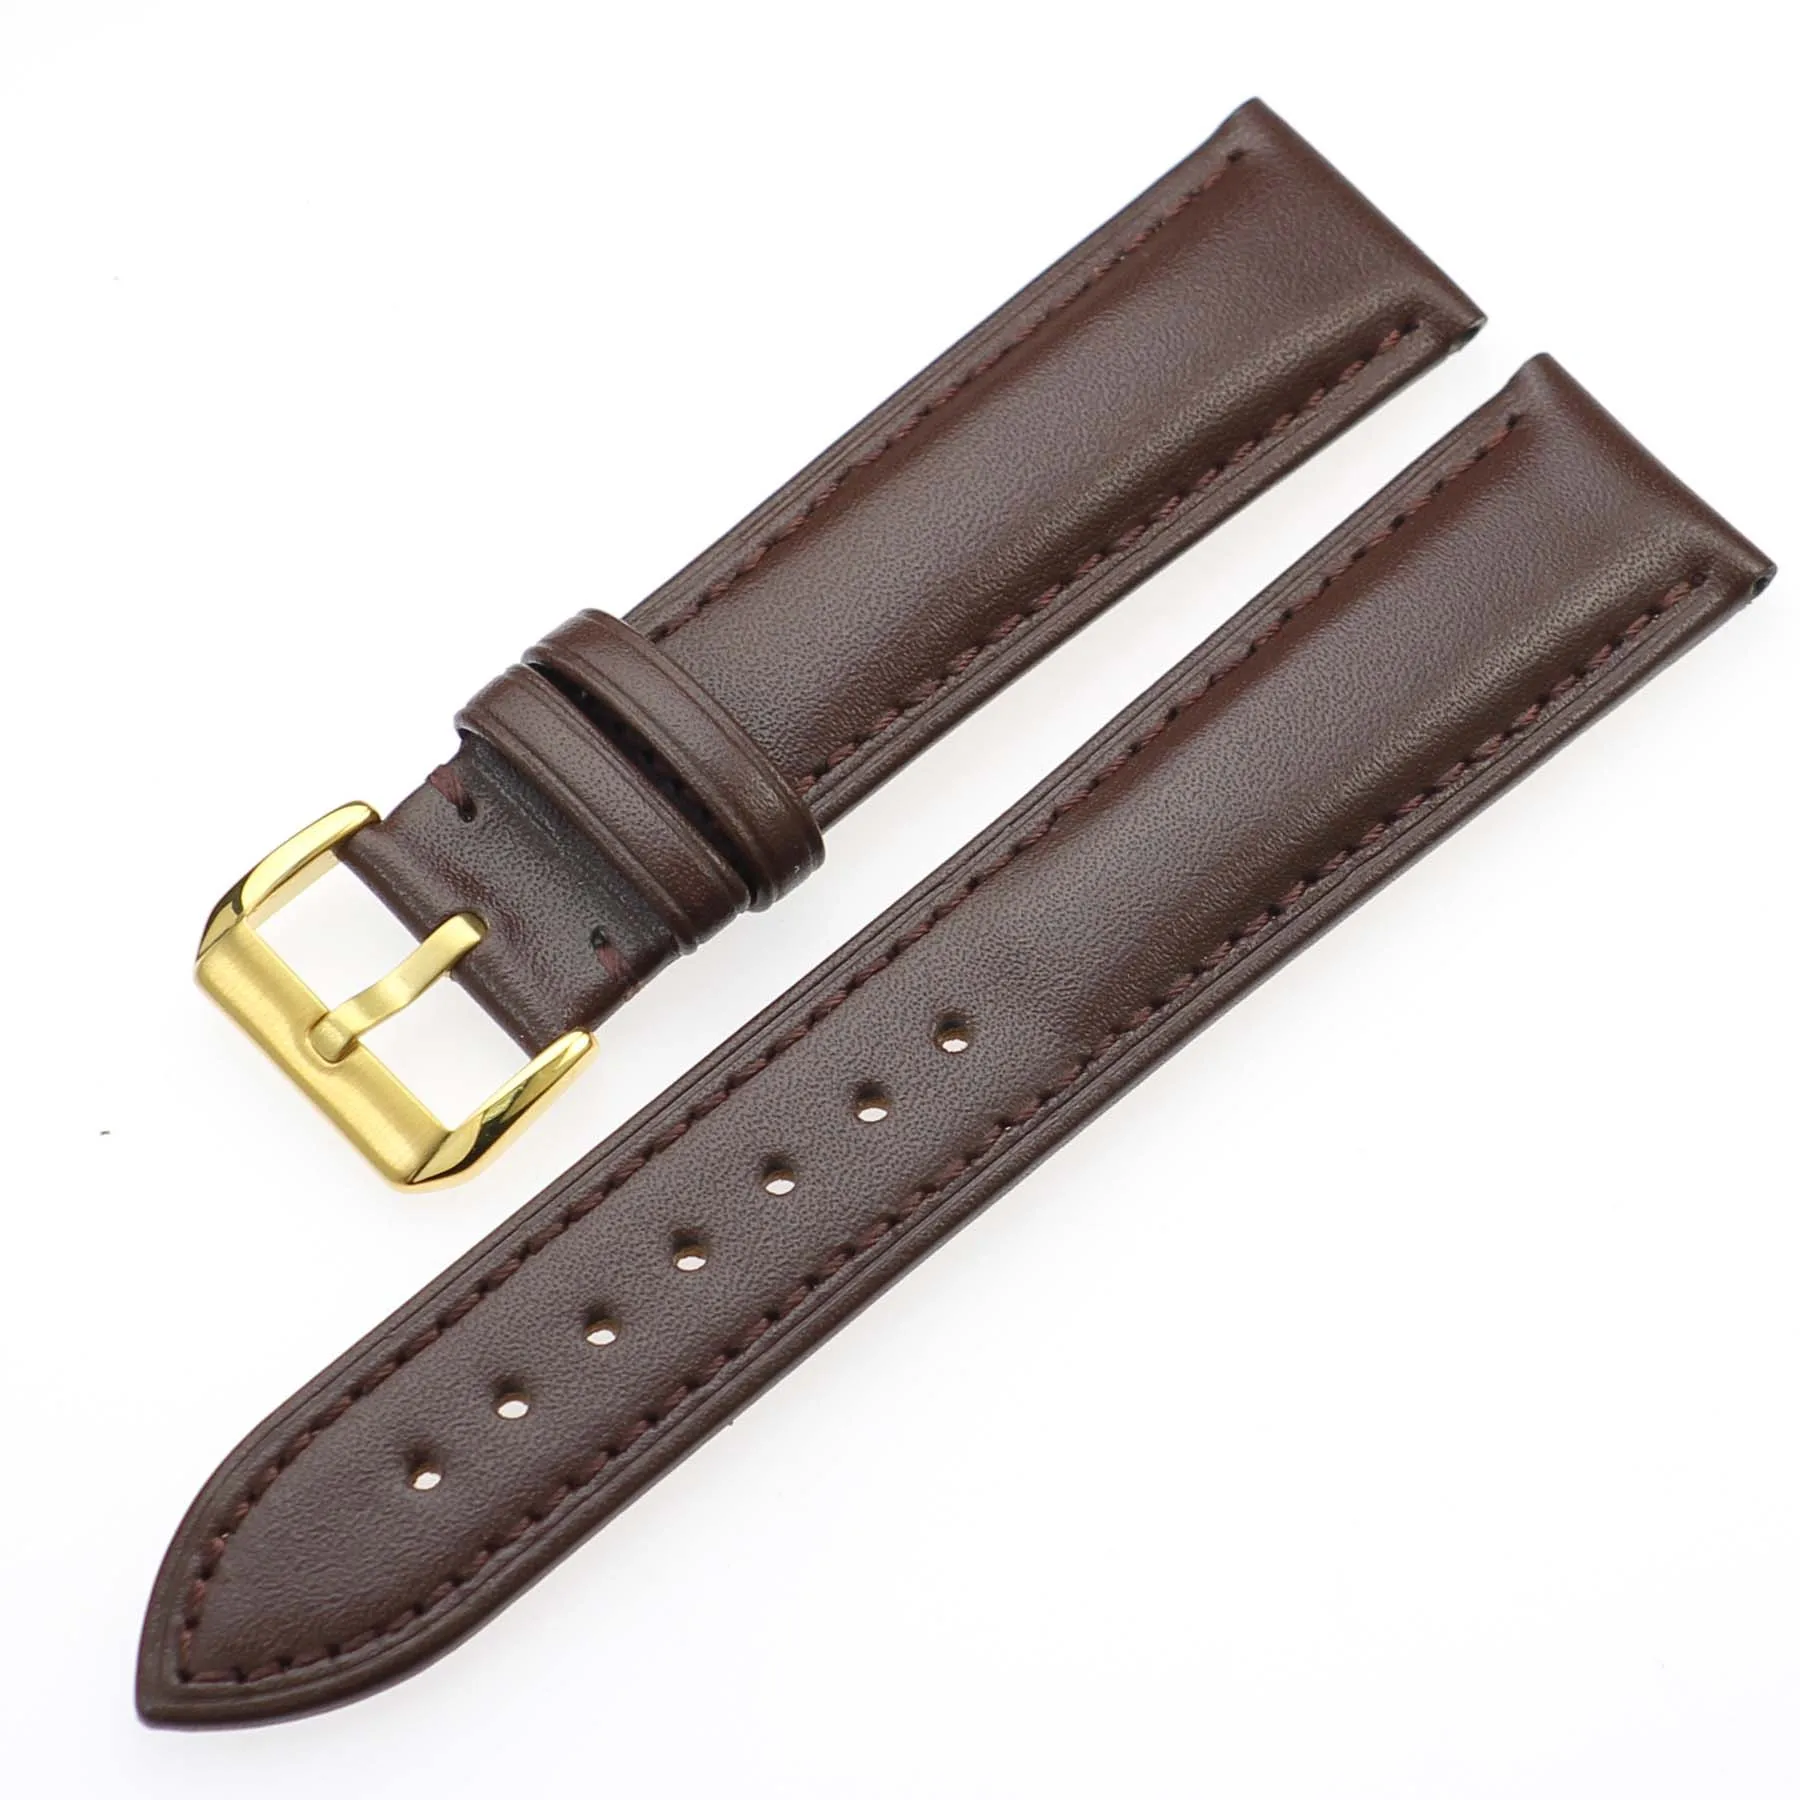 ZLIMSN Универсальный кожаный ремешок для часов Tissot Longines DW Seiko samsung gear S2 S3 huami amazfit huawei gt ремешок для часов - Цвет ремешка: brown gold